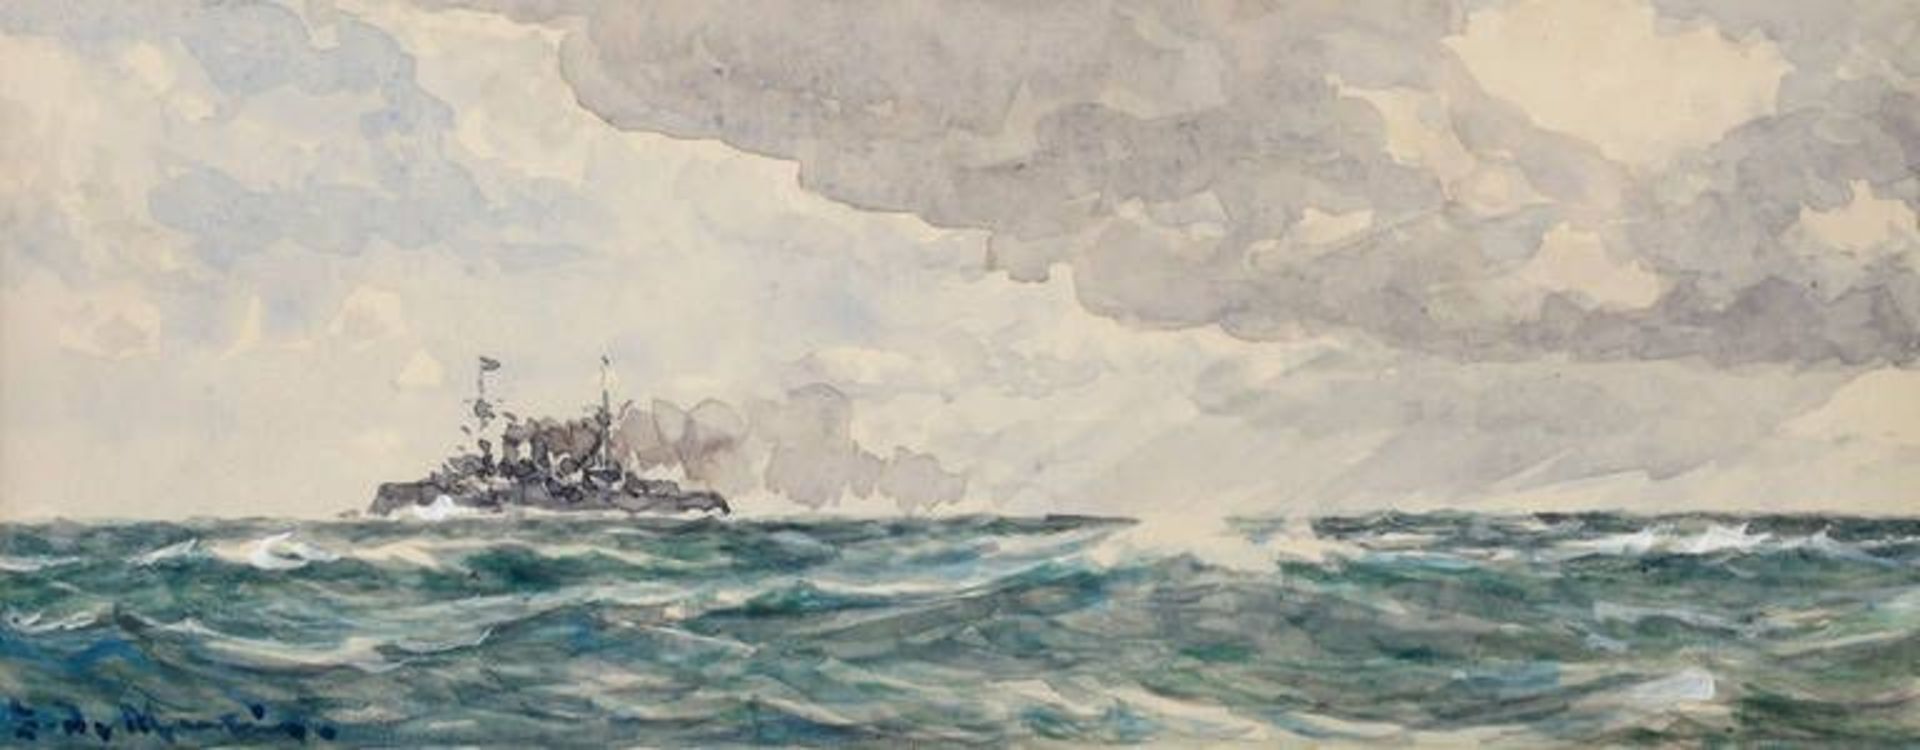 Eduardo de Martino, Kriegsschiff auf hoher See  Schiffsdarstellung unter locker bewölktem Himmel,